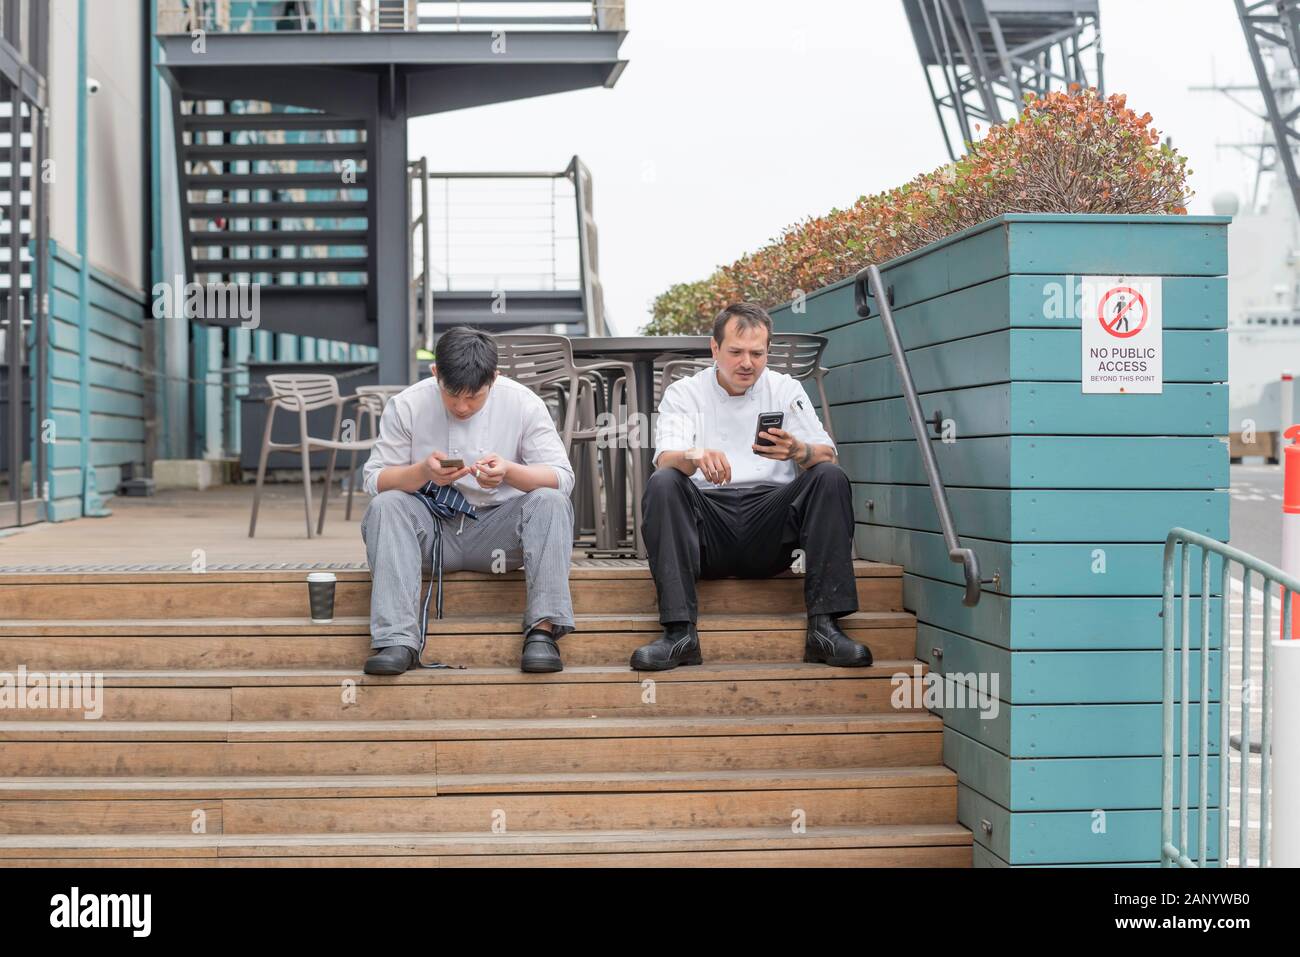 Deux chefs s'assoient à l'extérieur d'un restaurant dans la banlieue de Sydney de Woolloomooloo et fument tout en regardant leurs téléphones mobiles Banque D'Images